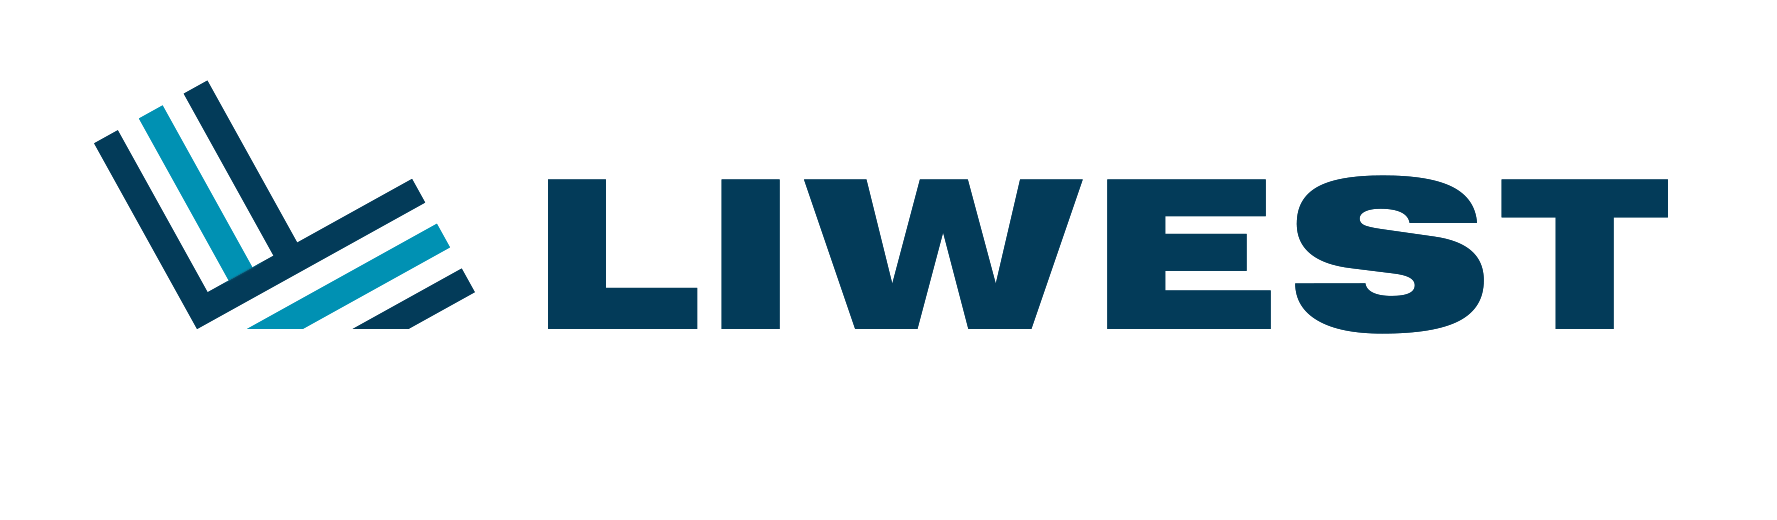 LIWEST_Logo_ohneClaim